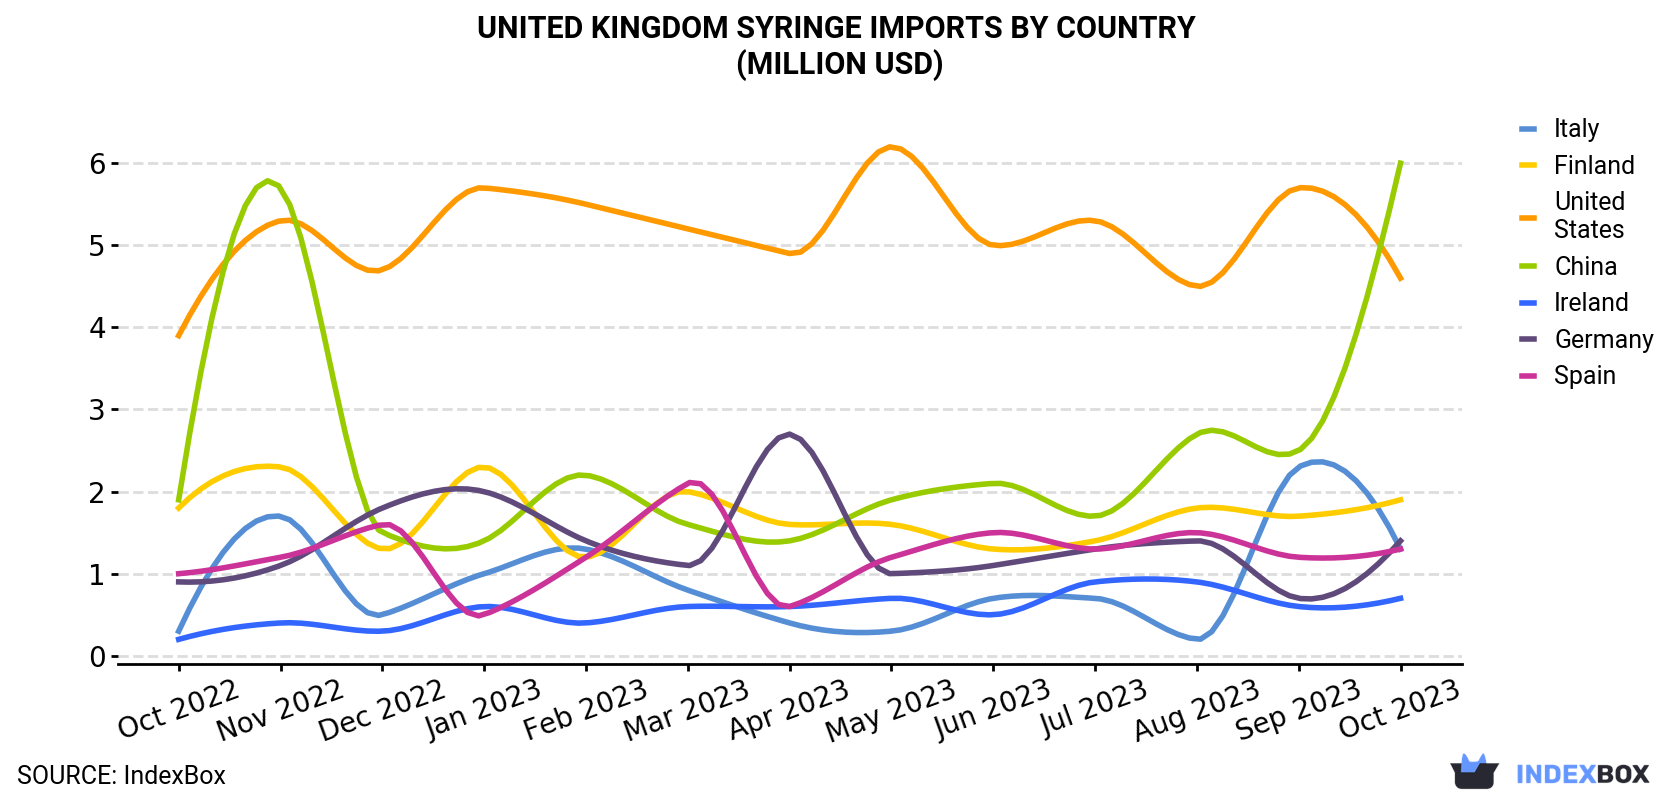 United Kingdom Syringe Imports By Country (Million USD)